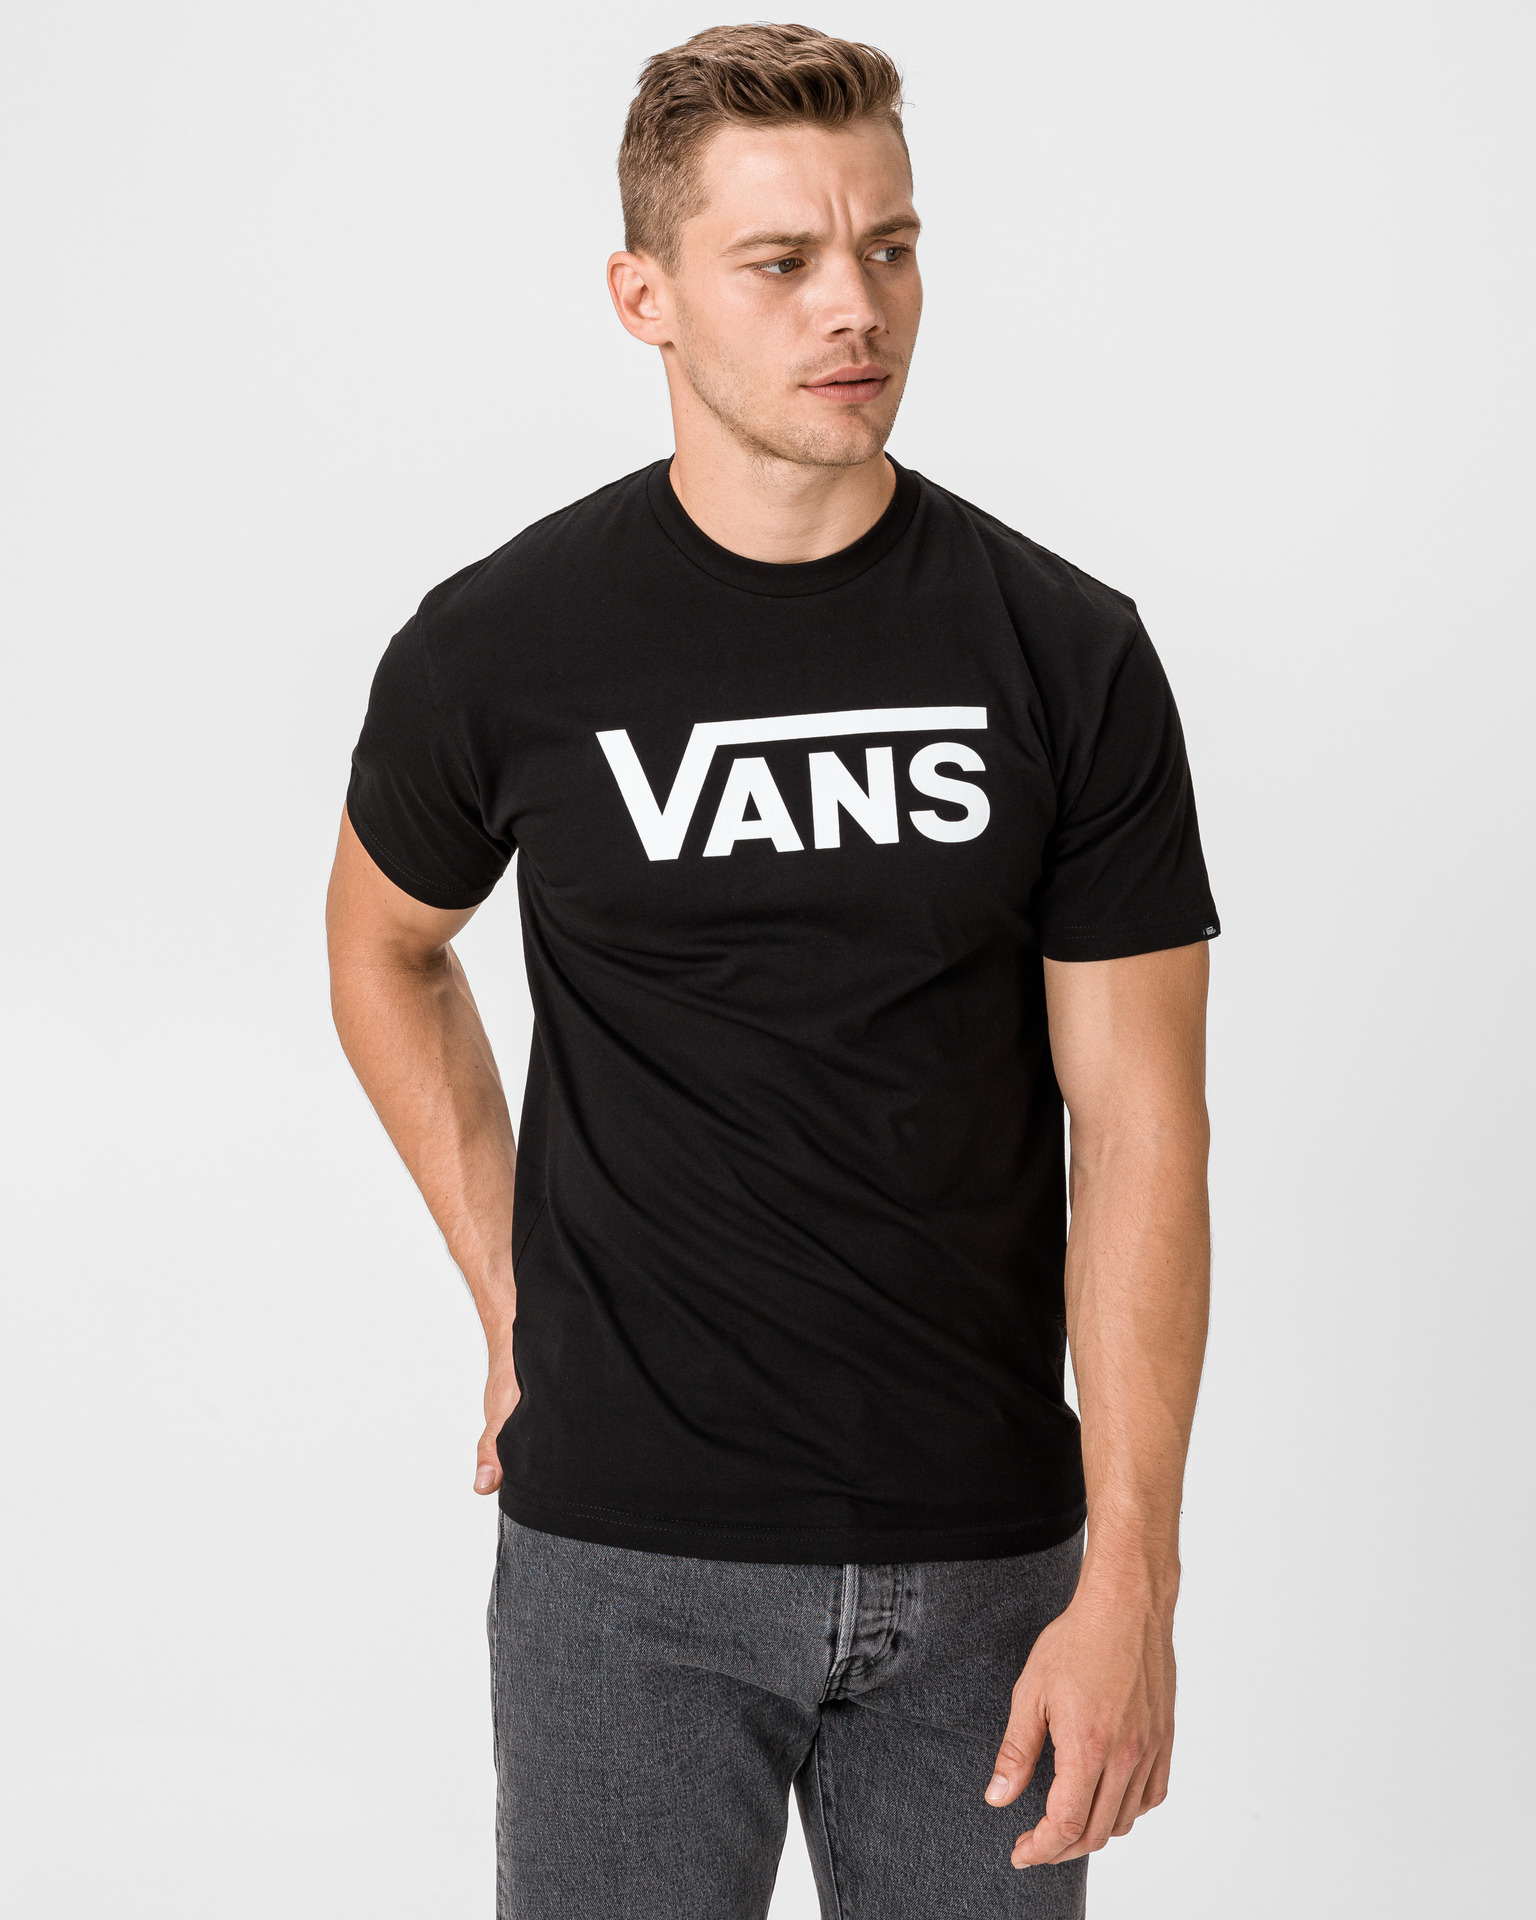 vans classic t shirt black